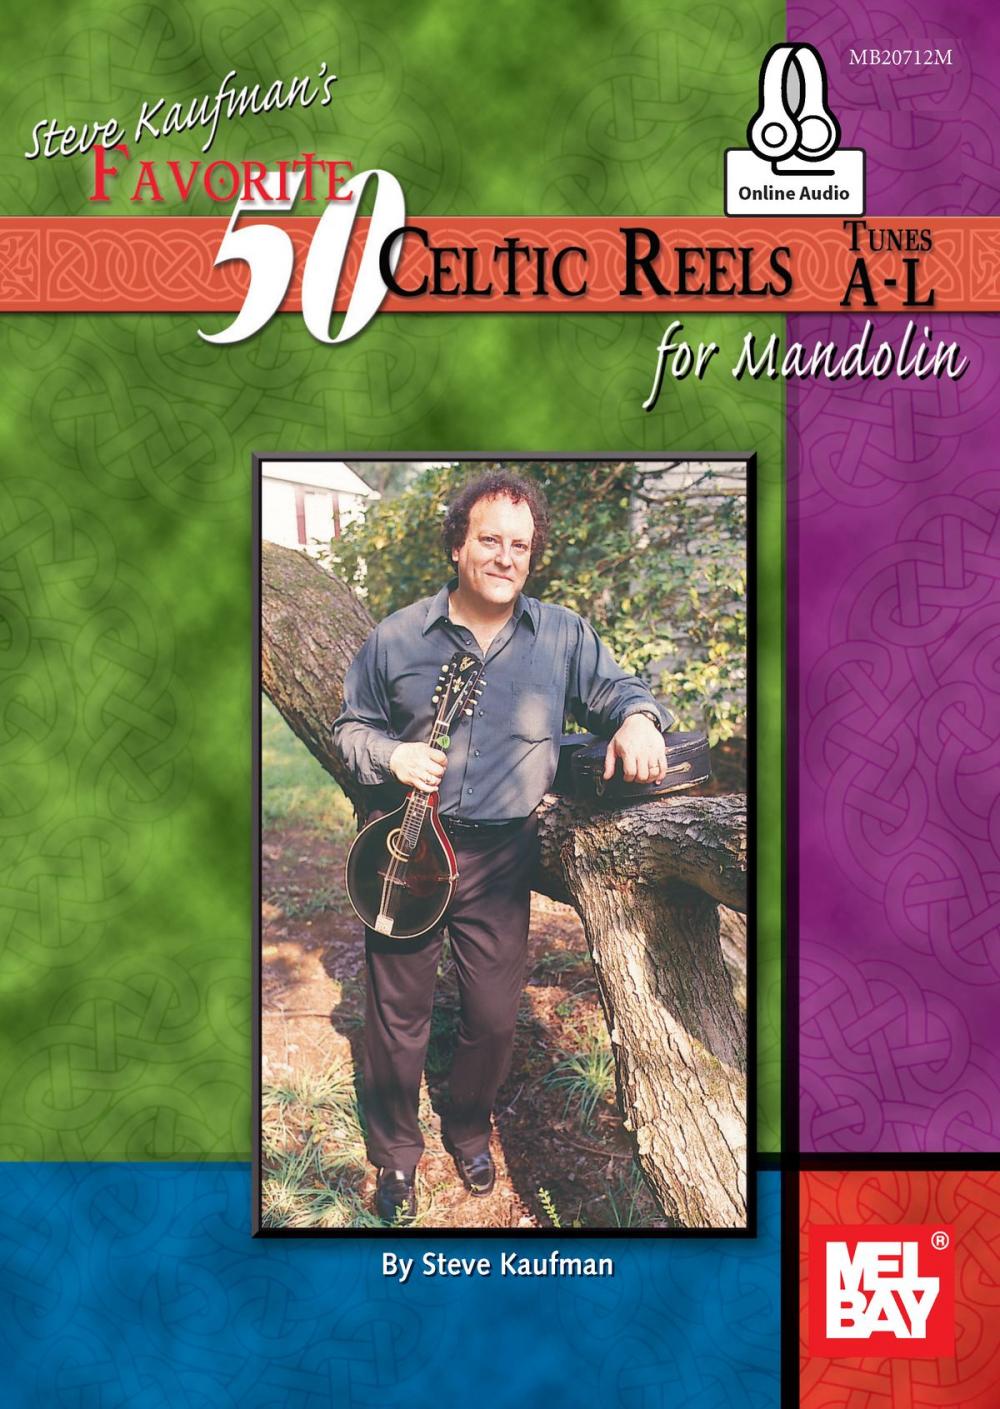 Big bigCover of Steve Kaufman's Favorite 50 Celtic Reels for Mandolin